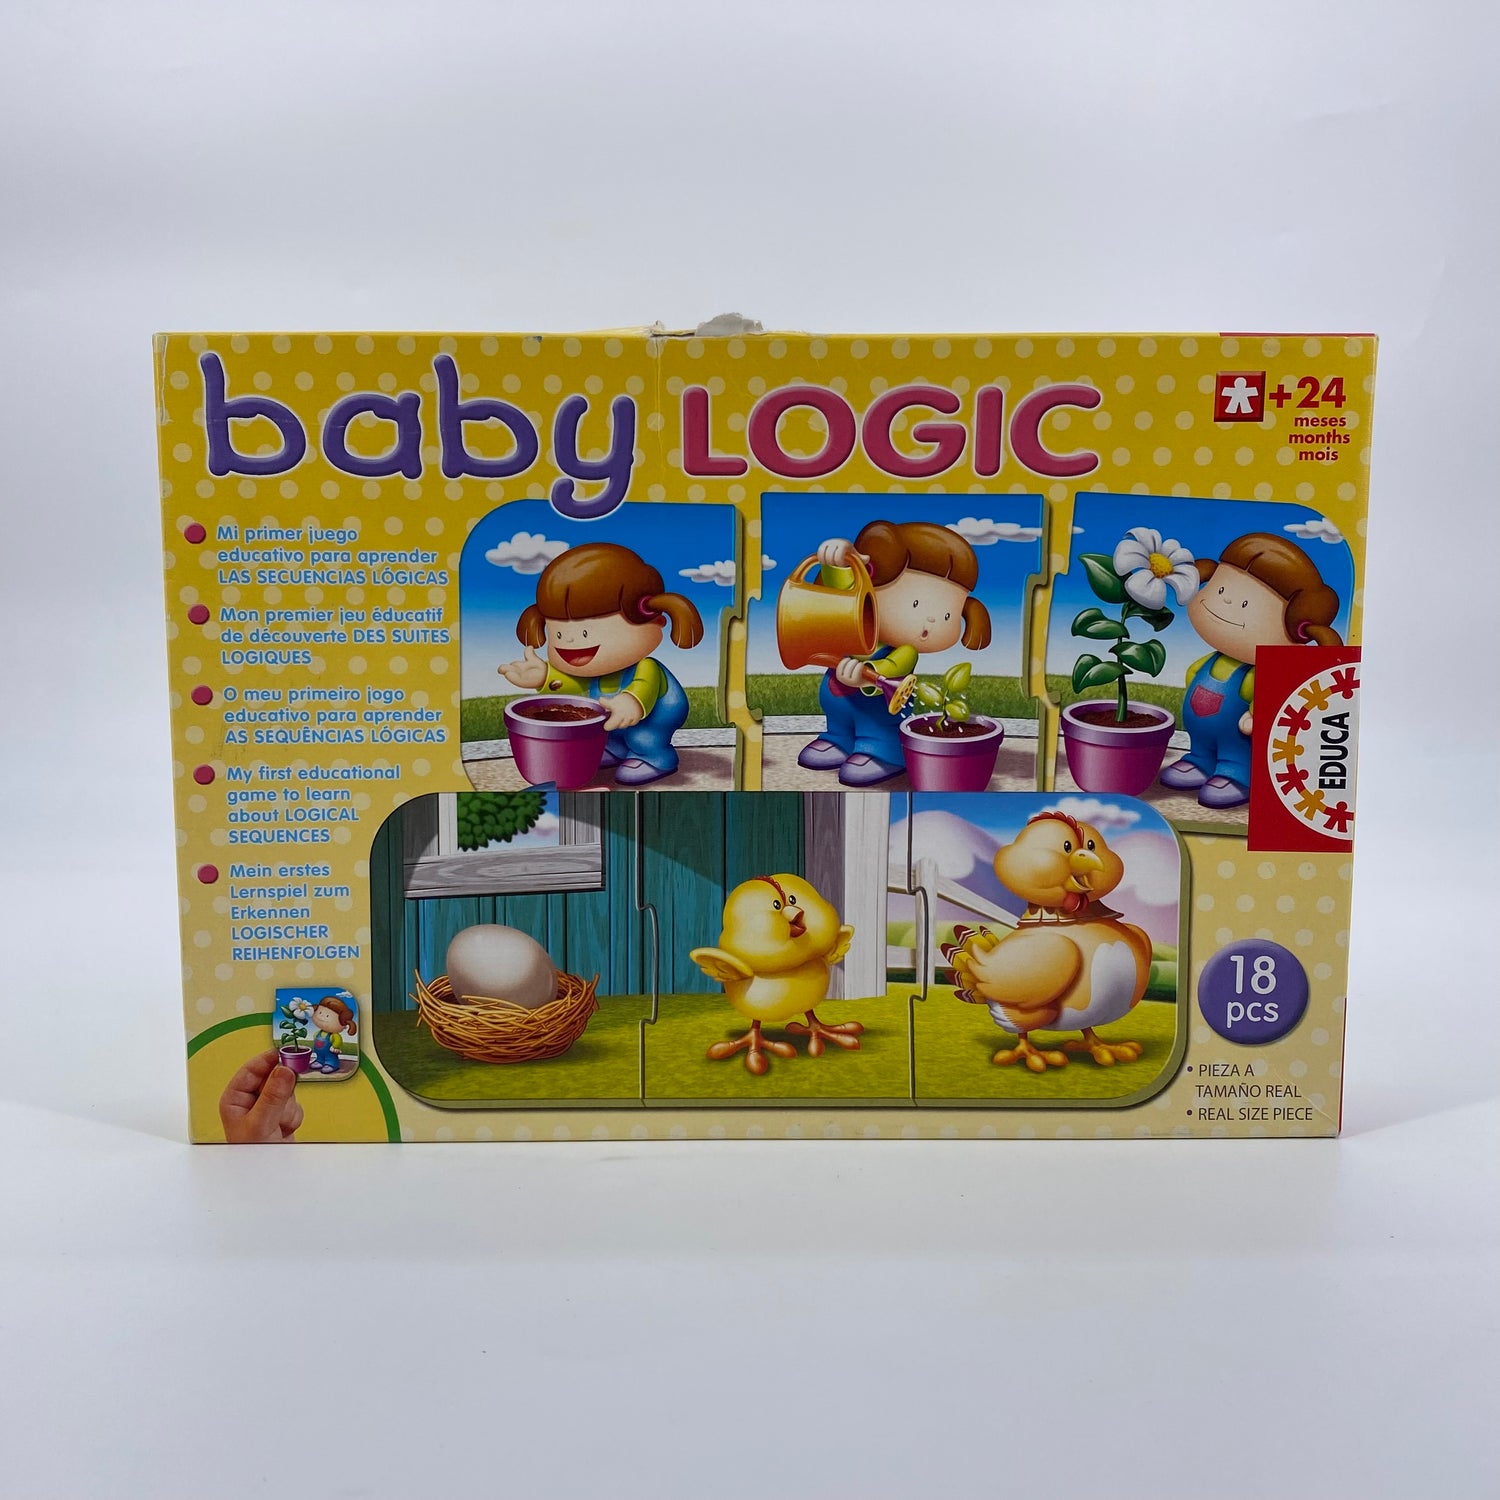 Baby Logic - Mon premier jeu éducatif de découverte des suites logiques